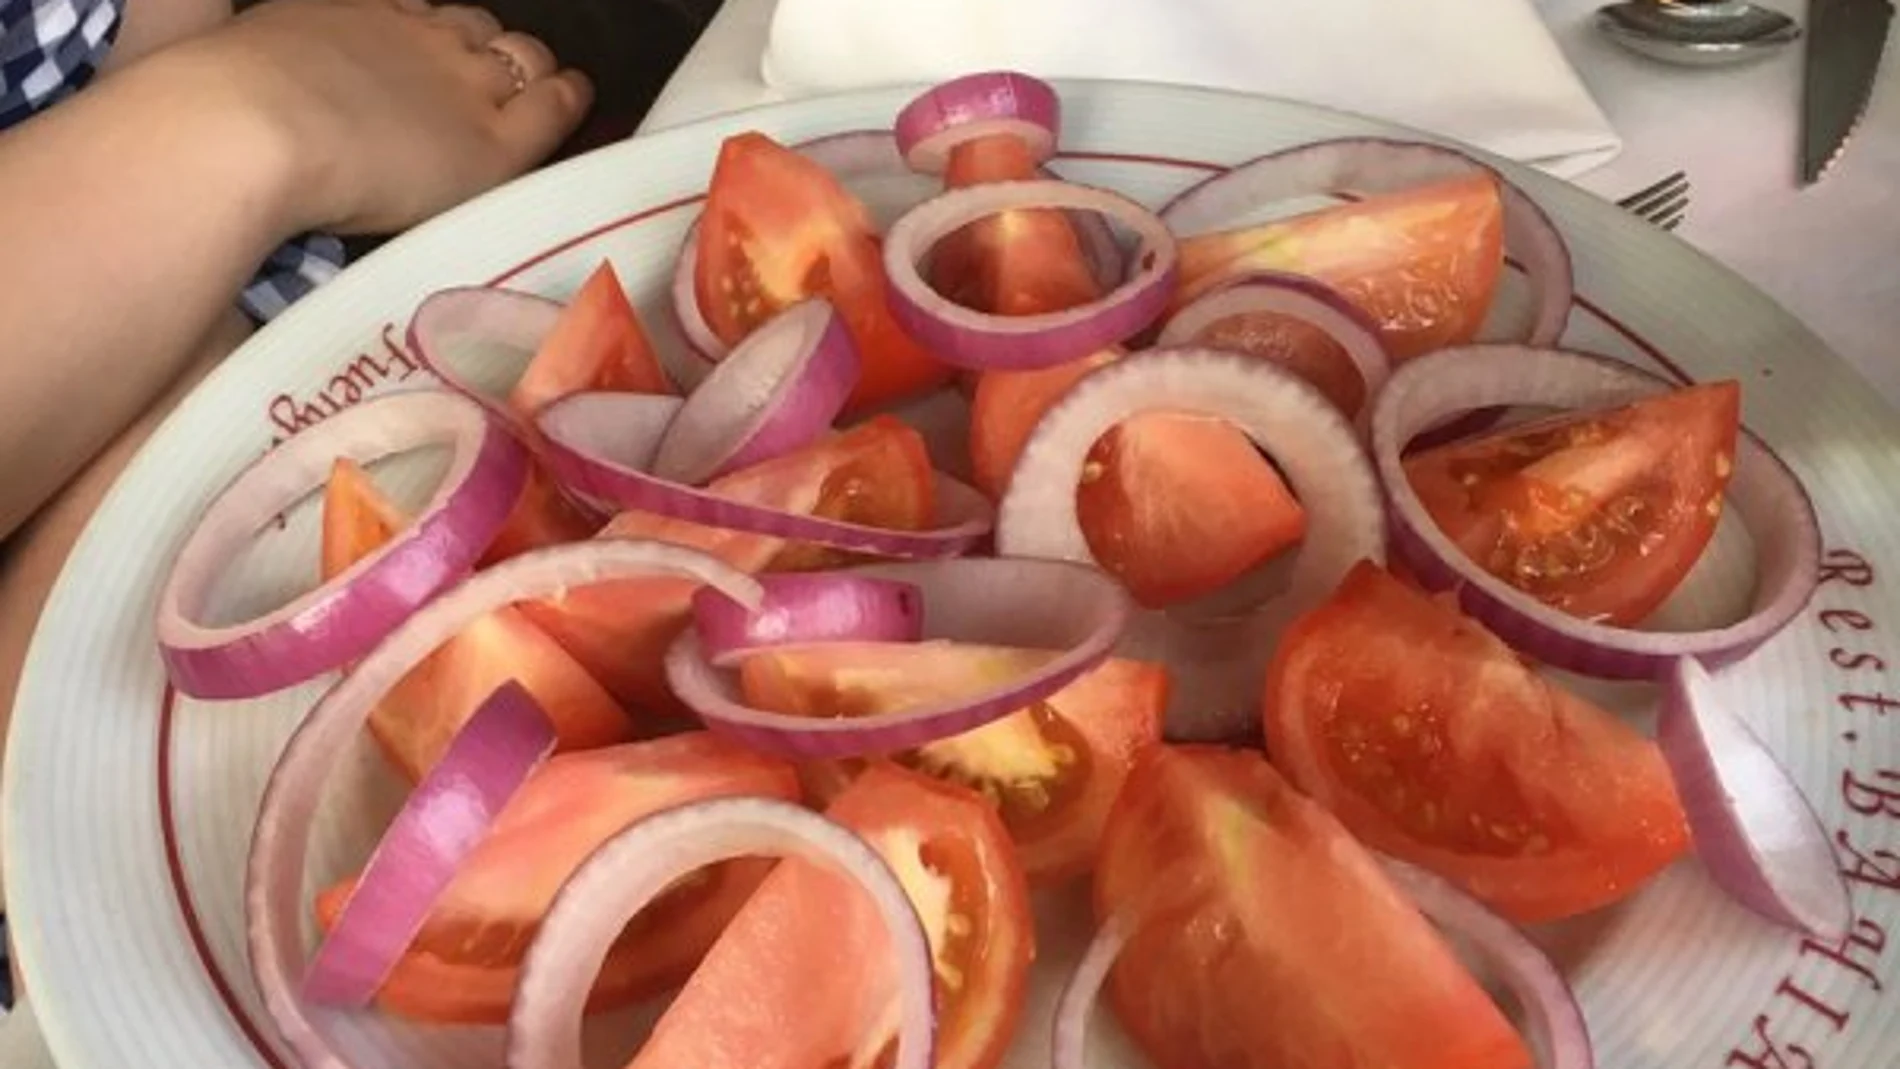  Cebolla y tomate: así era el plato que le sirvieron a una vegetariana en un restaurante de Málaga   